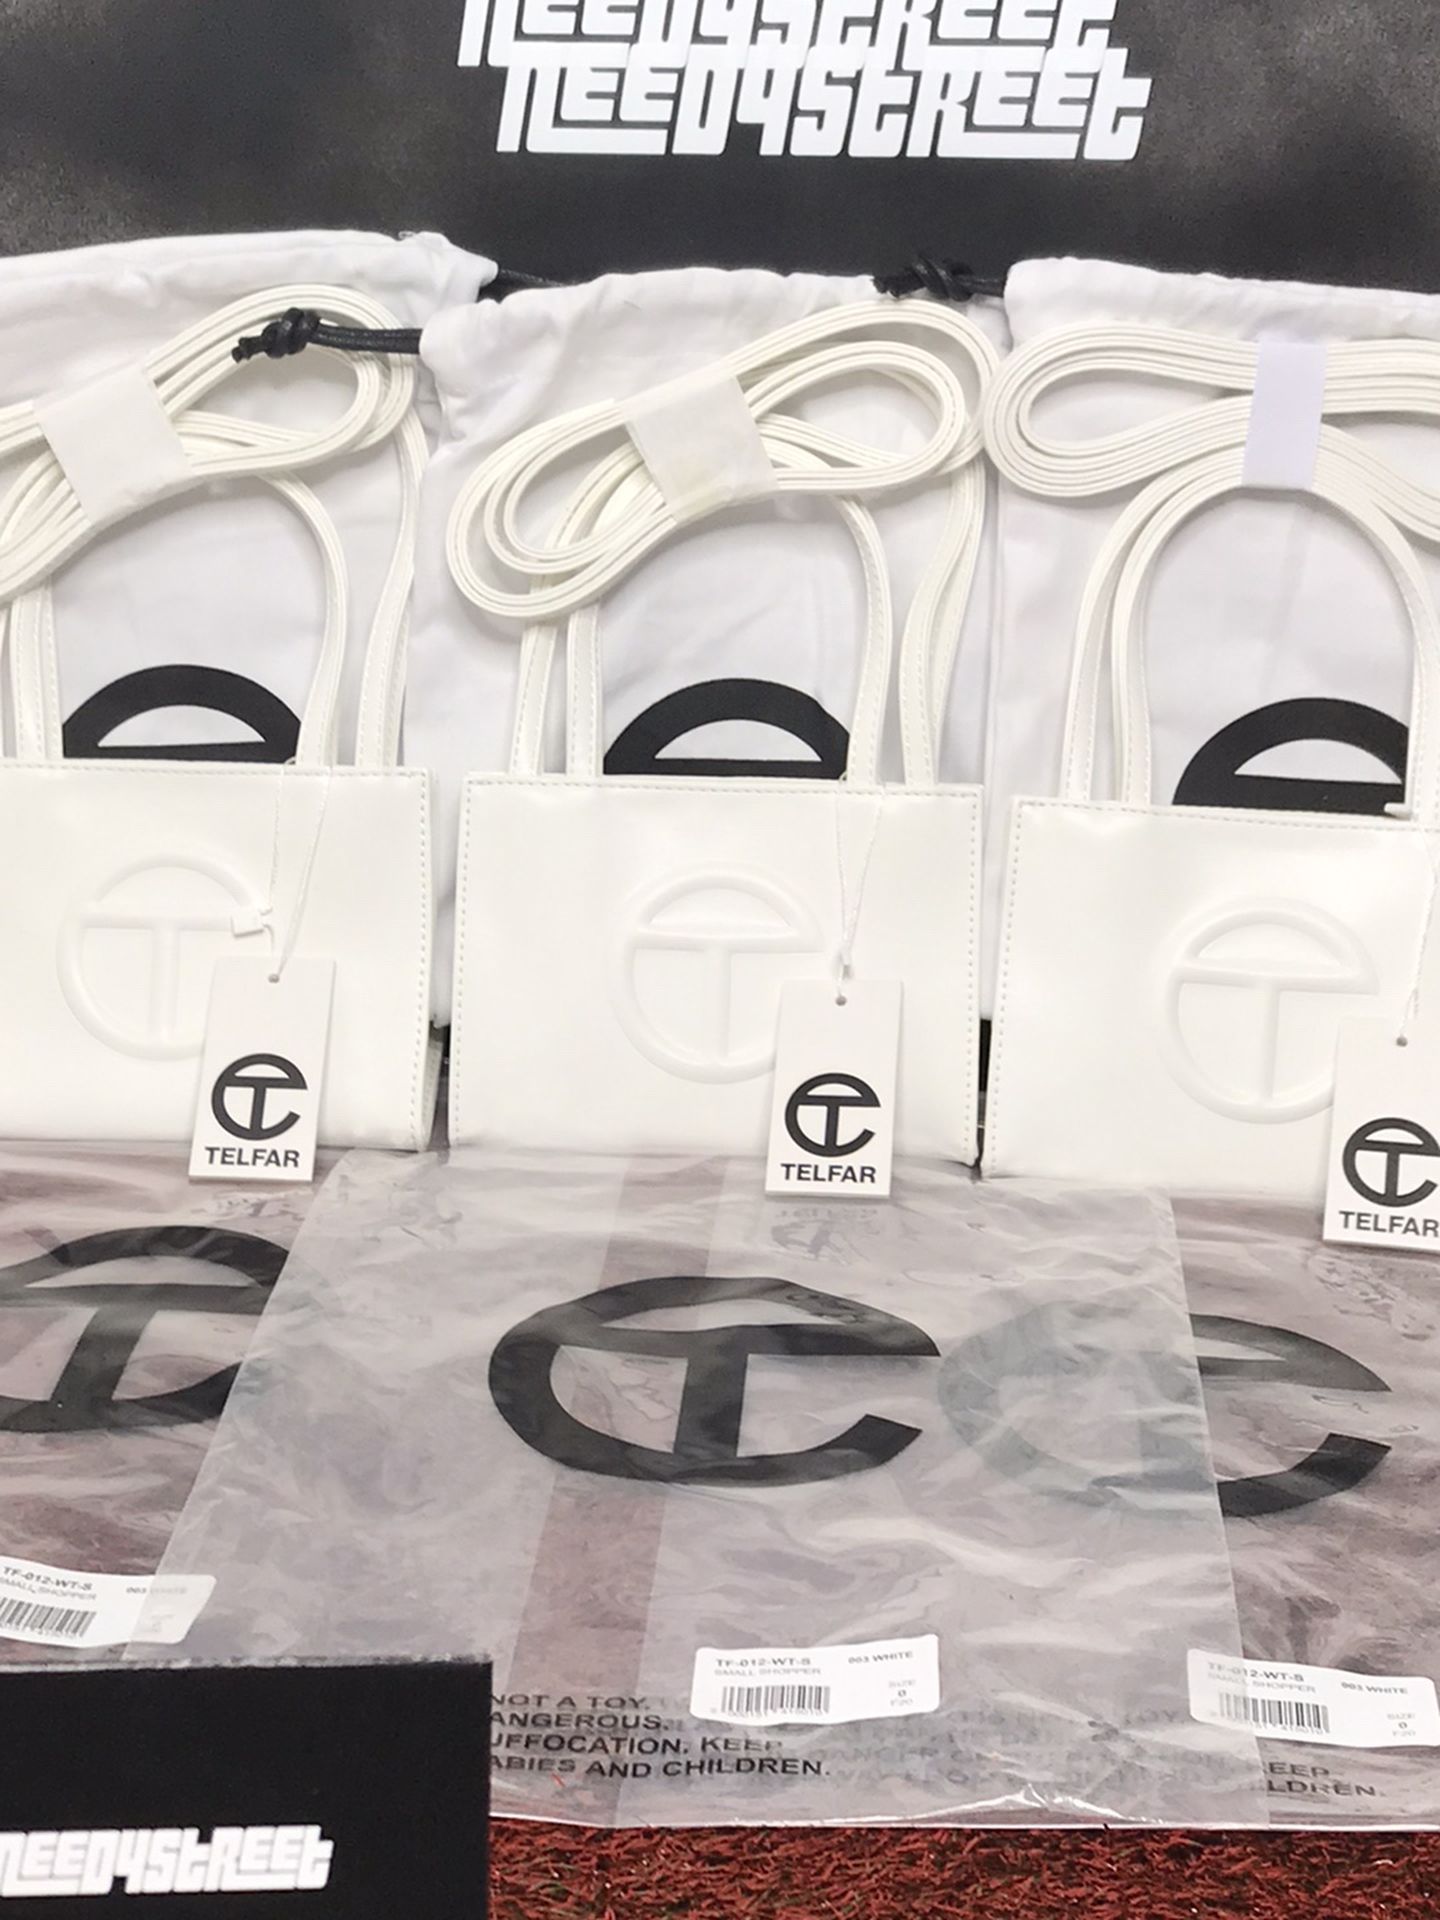 New Small White Telfar Shopping Bags $180 Each